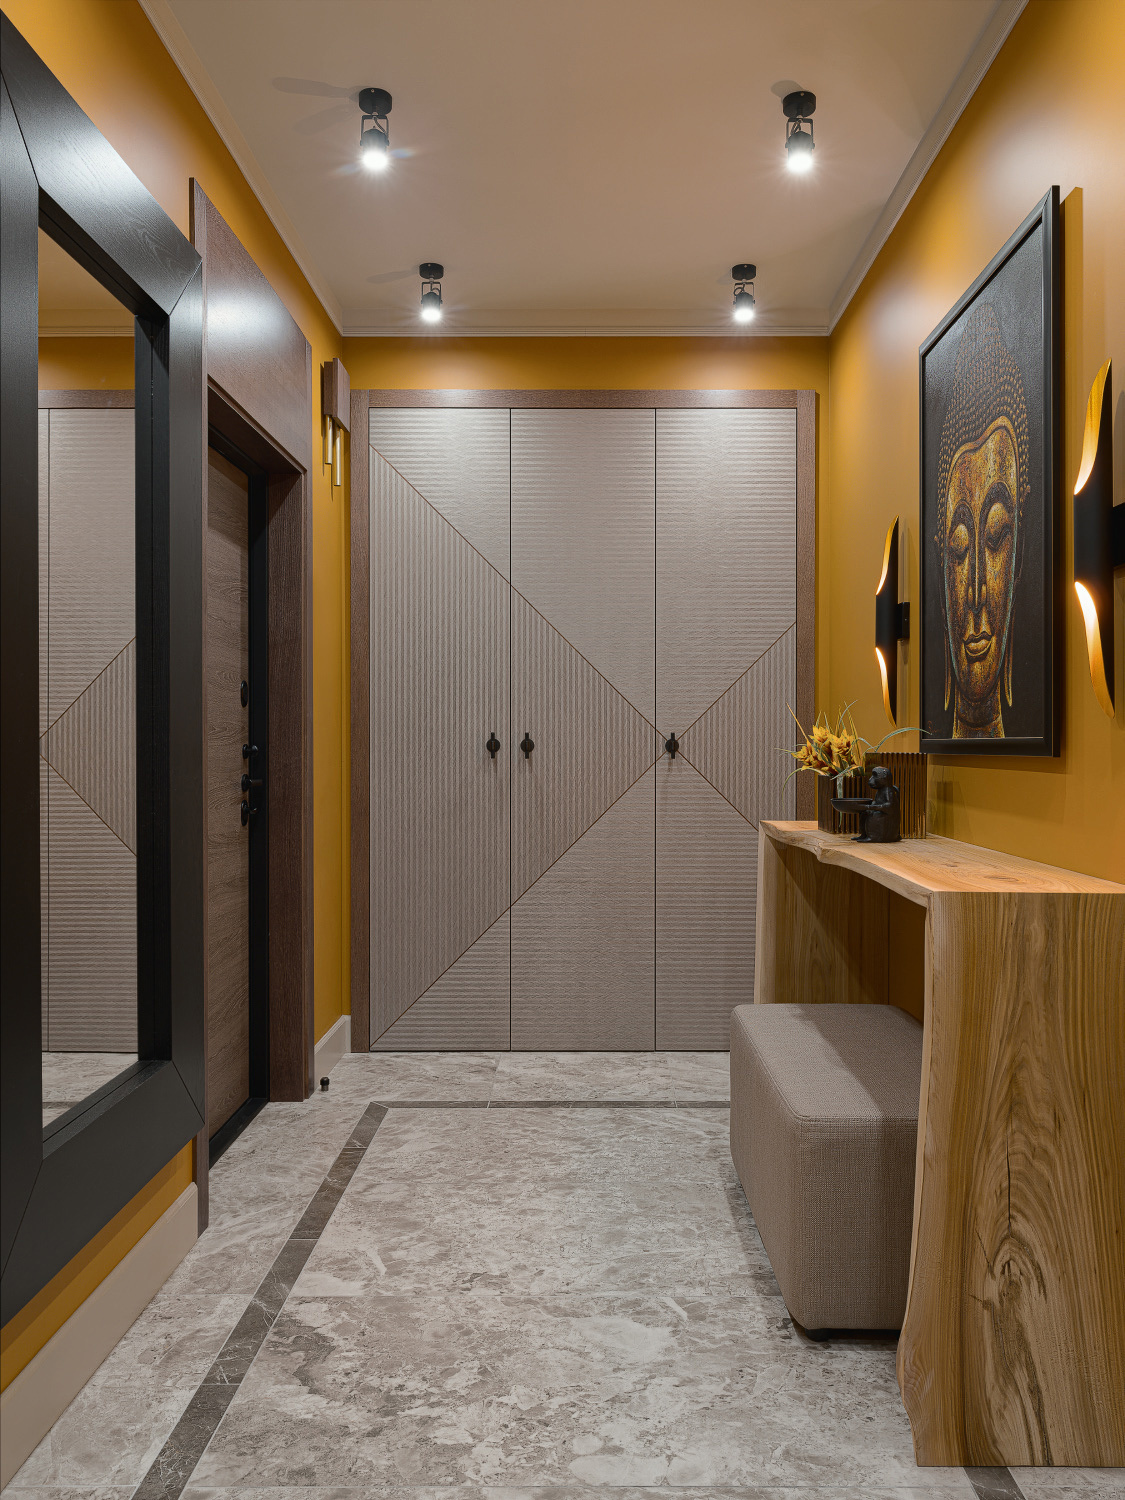 Cùng là vật liệu gỗ nhưng khu vực cánh cửa ra vào, khung gương treo tường và chiếc bàn nhỏ gọn lại sử dụng 3 tone màu khác nhau gồm nâu, đen và vàng nhạt để giúp không gian trở nên sinh động hơn.